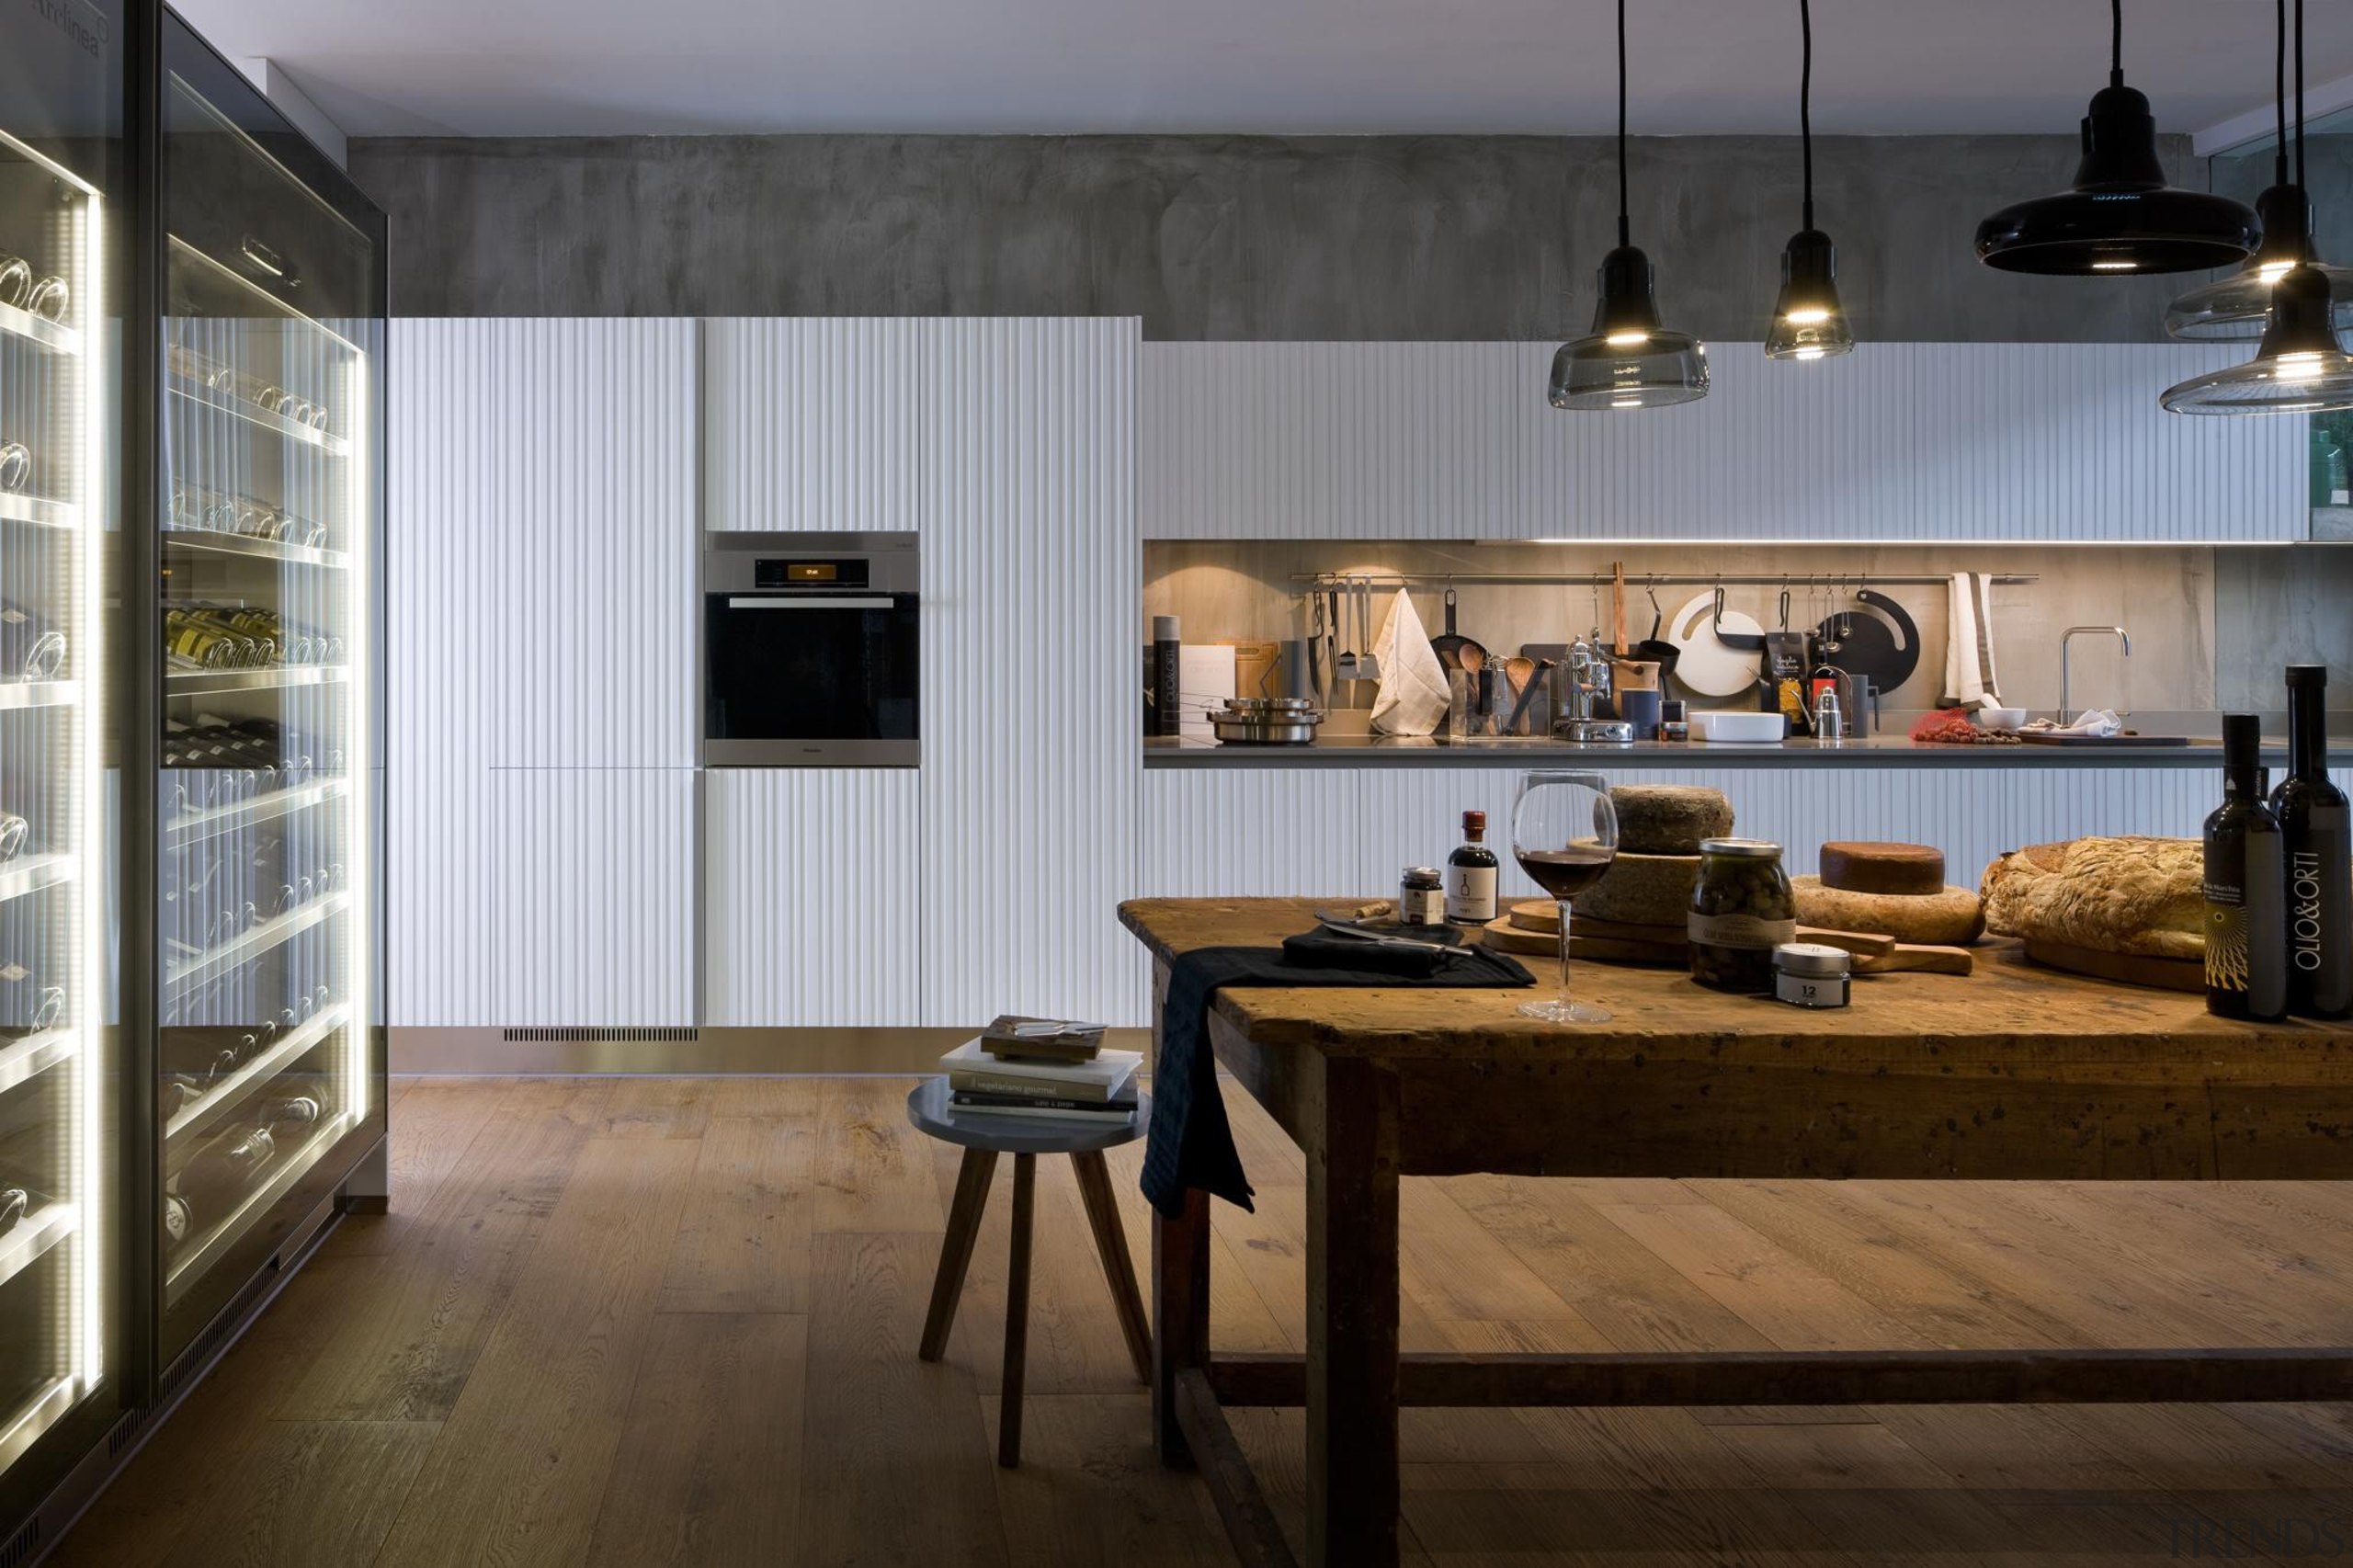 Gamma Kitchen designed by Antonio Citterio for Arclinea countertop, interior design, kitchen, gray, black